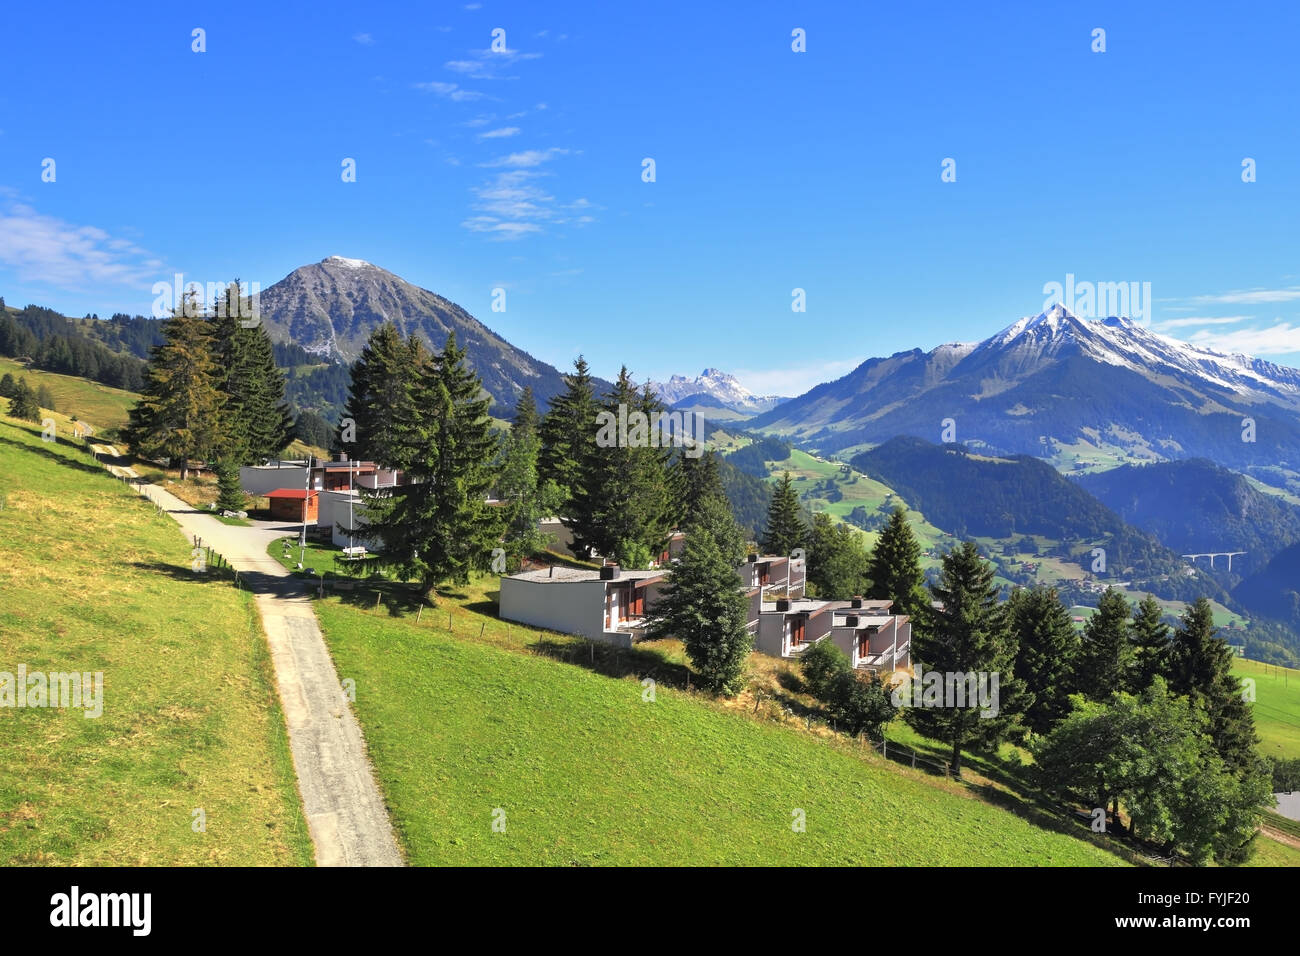 Météo magnifiques dans la ville touristique de Leysin, dans les Alpes suisses. Doux pittoresques prairies alpines et Maisons rurales Chalets Banque D'Images